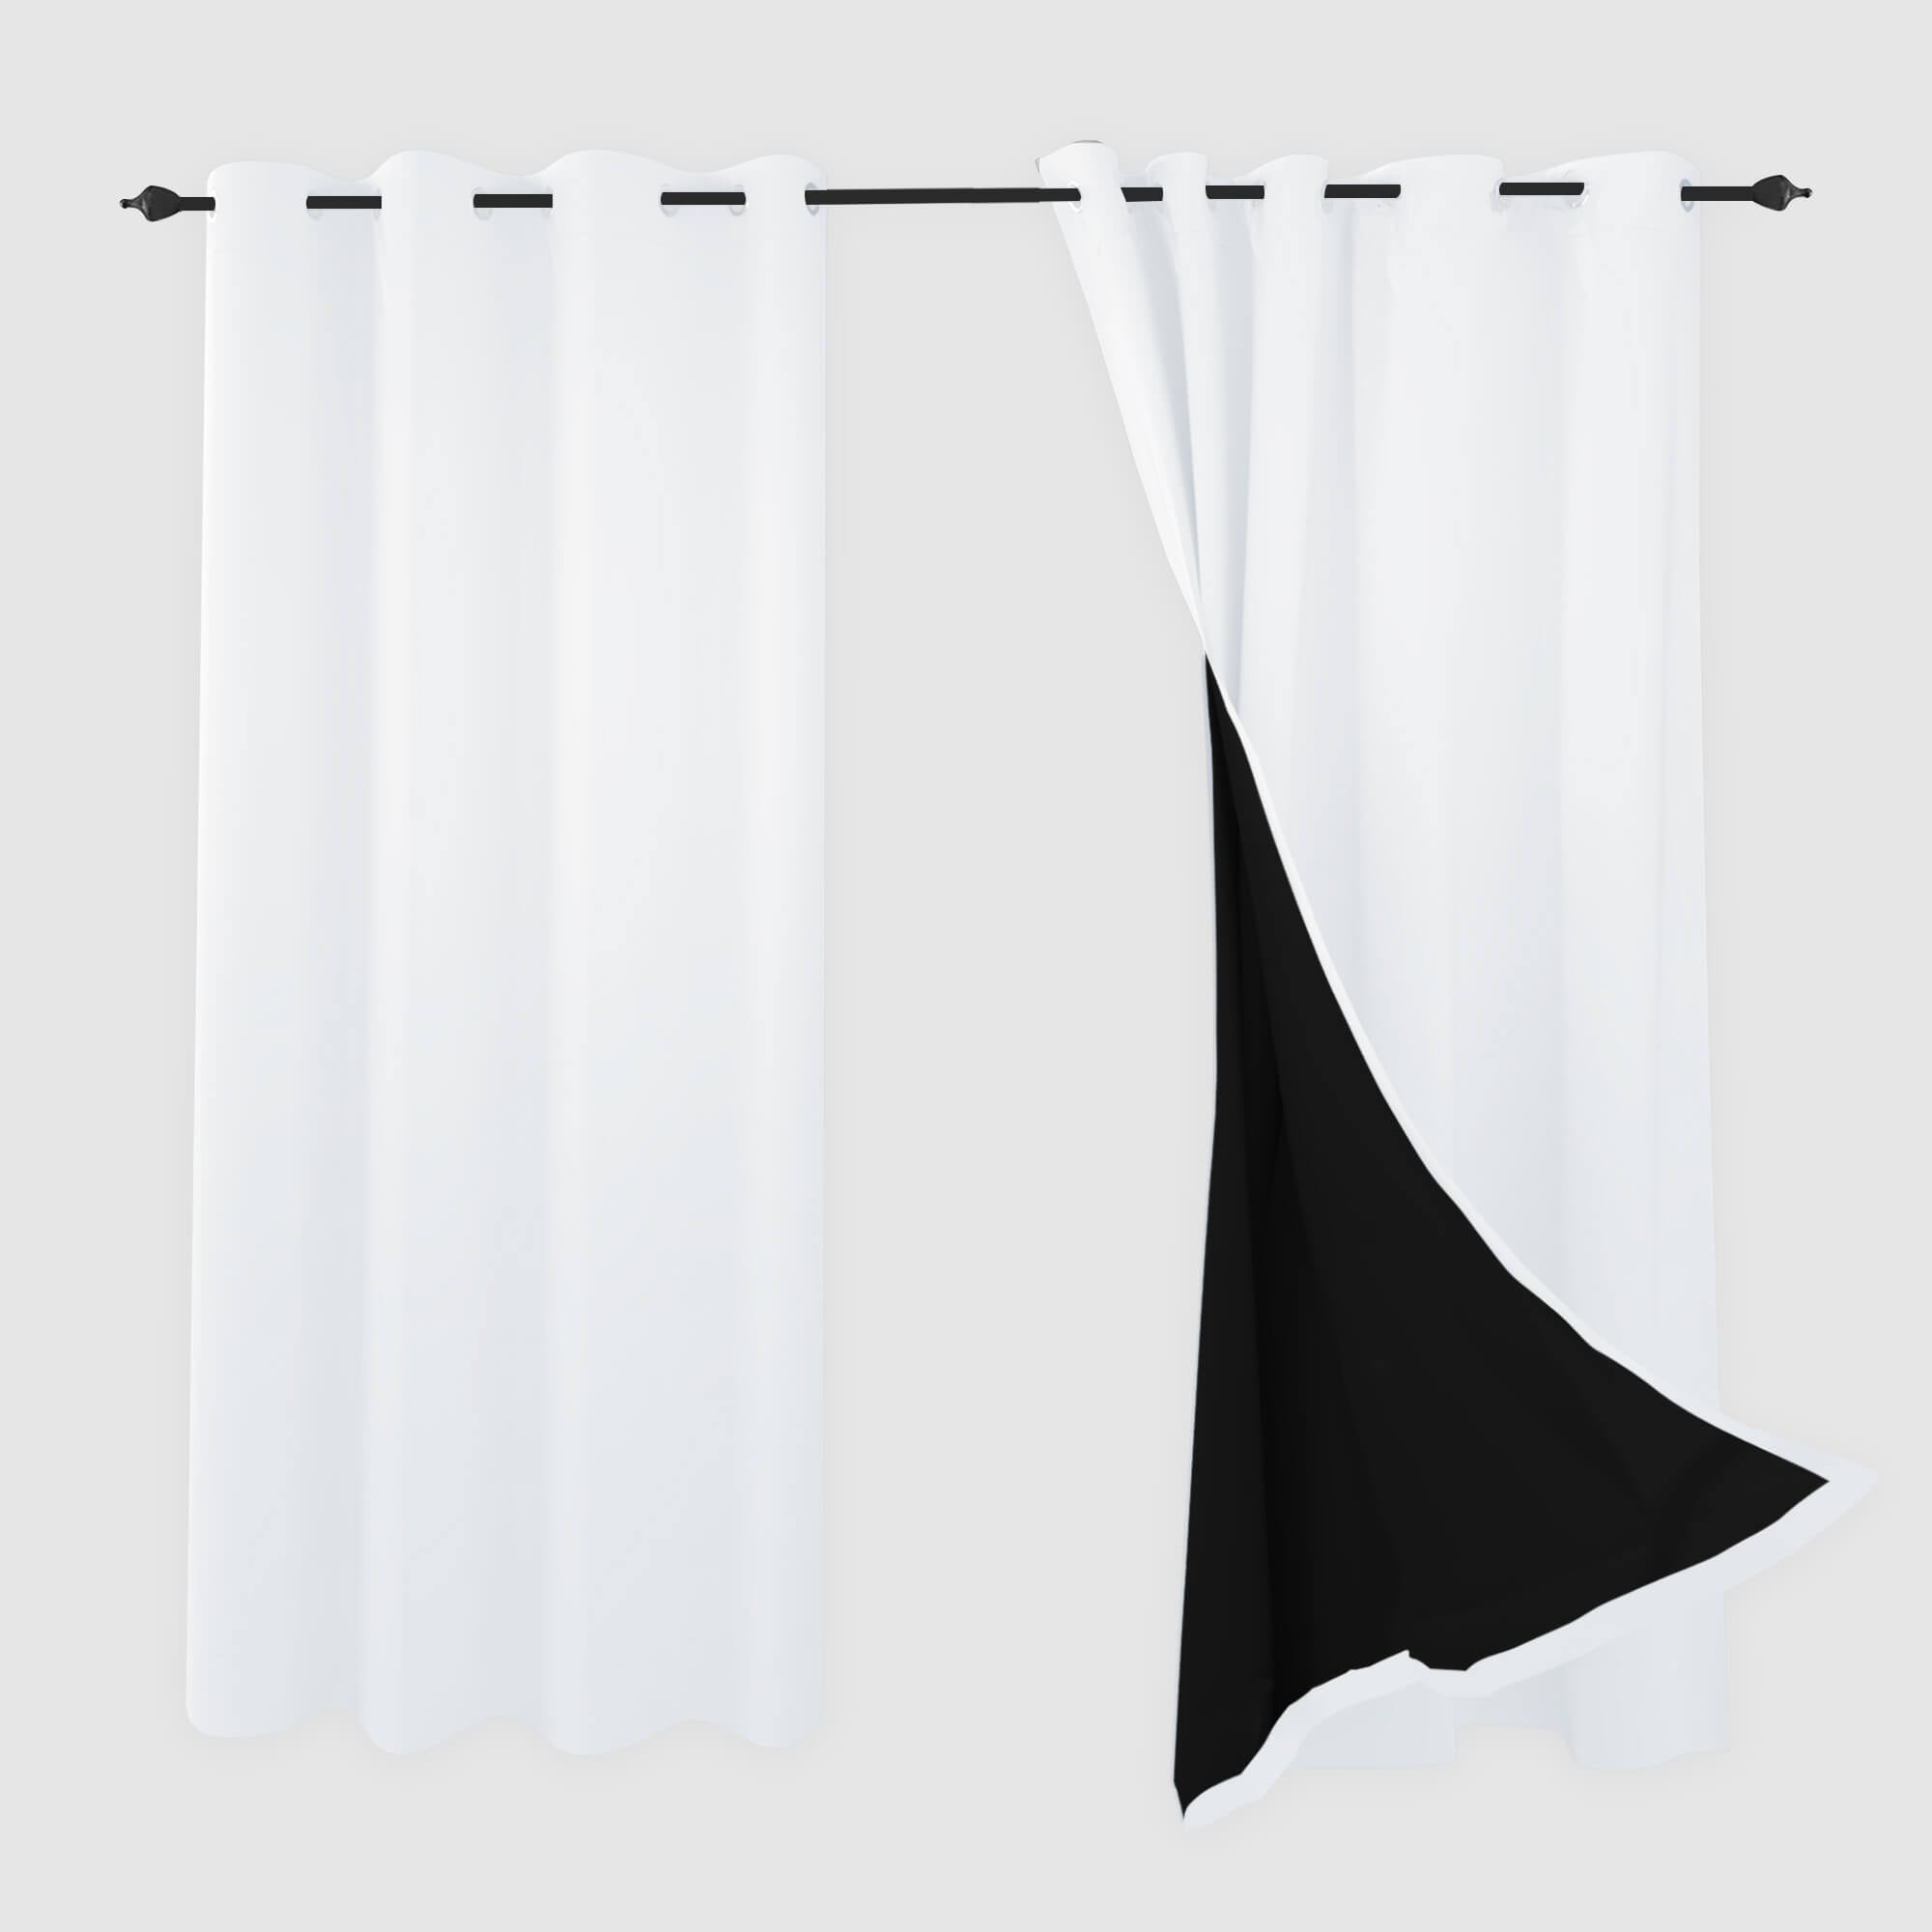 SNOWCITY Blackout Curtains Pure White - Grommet Top